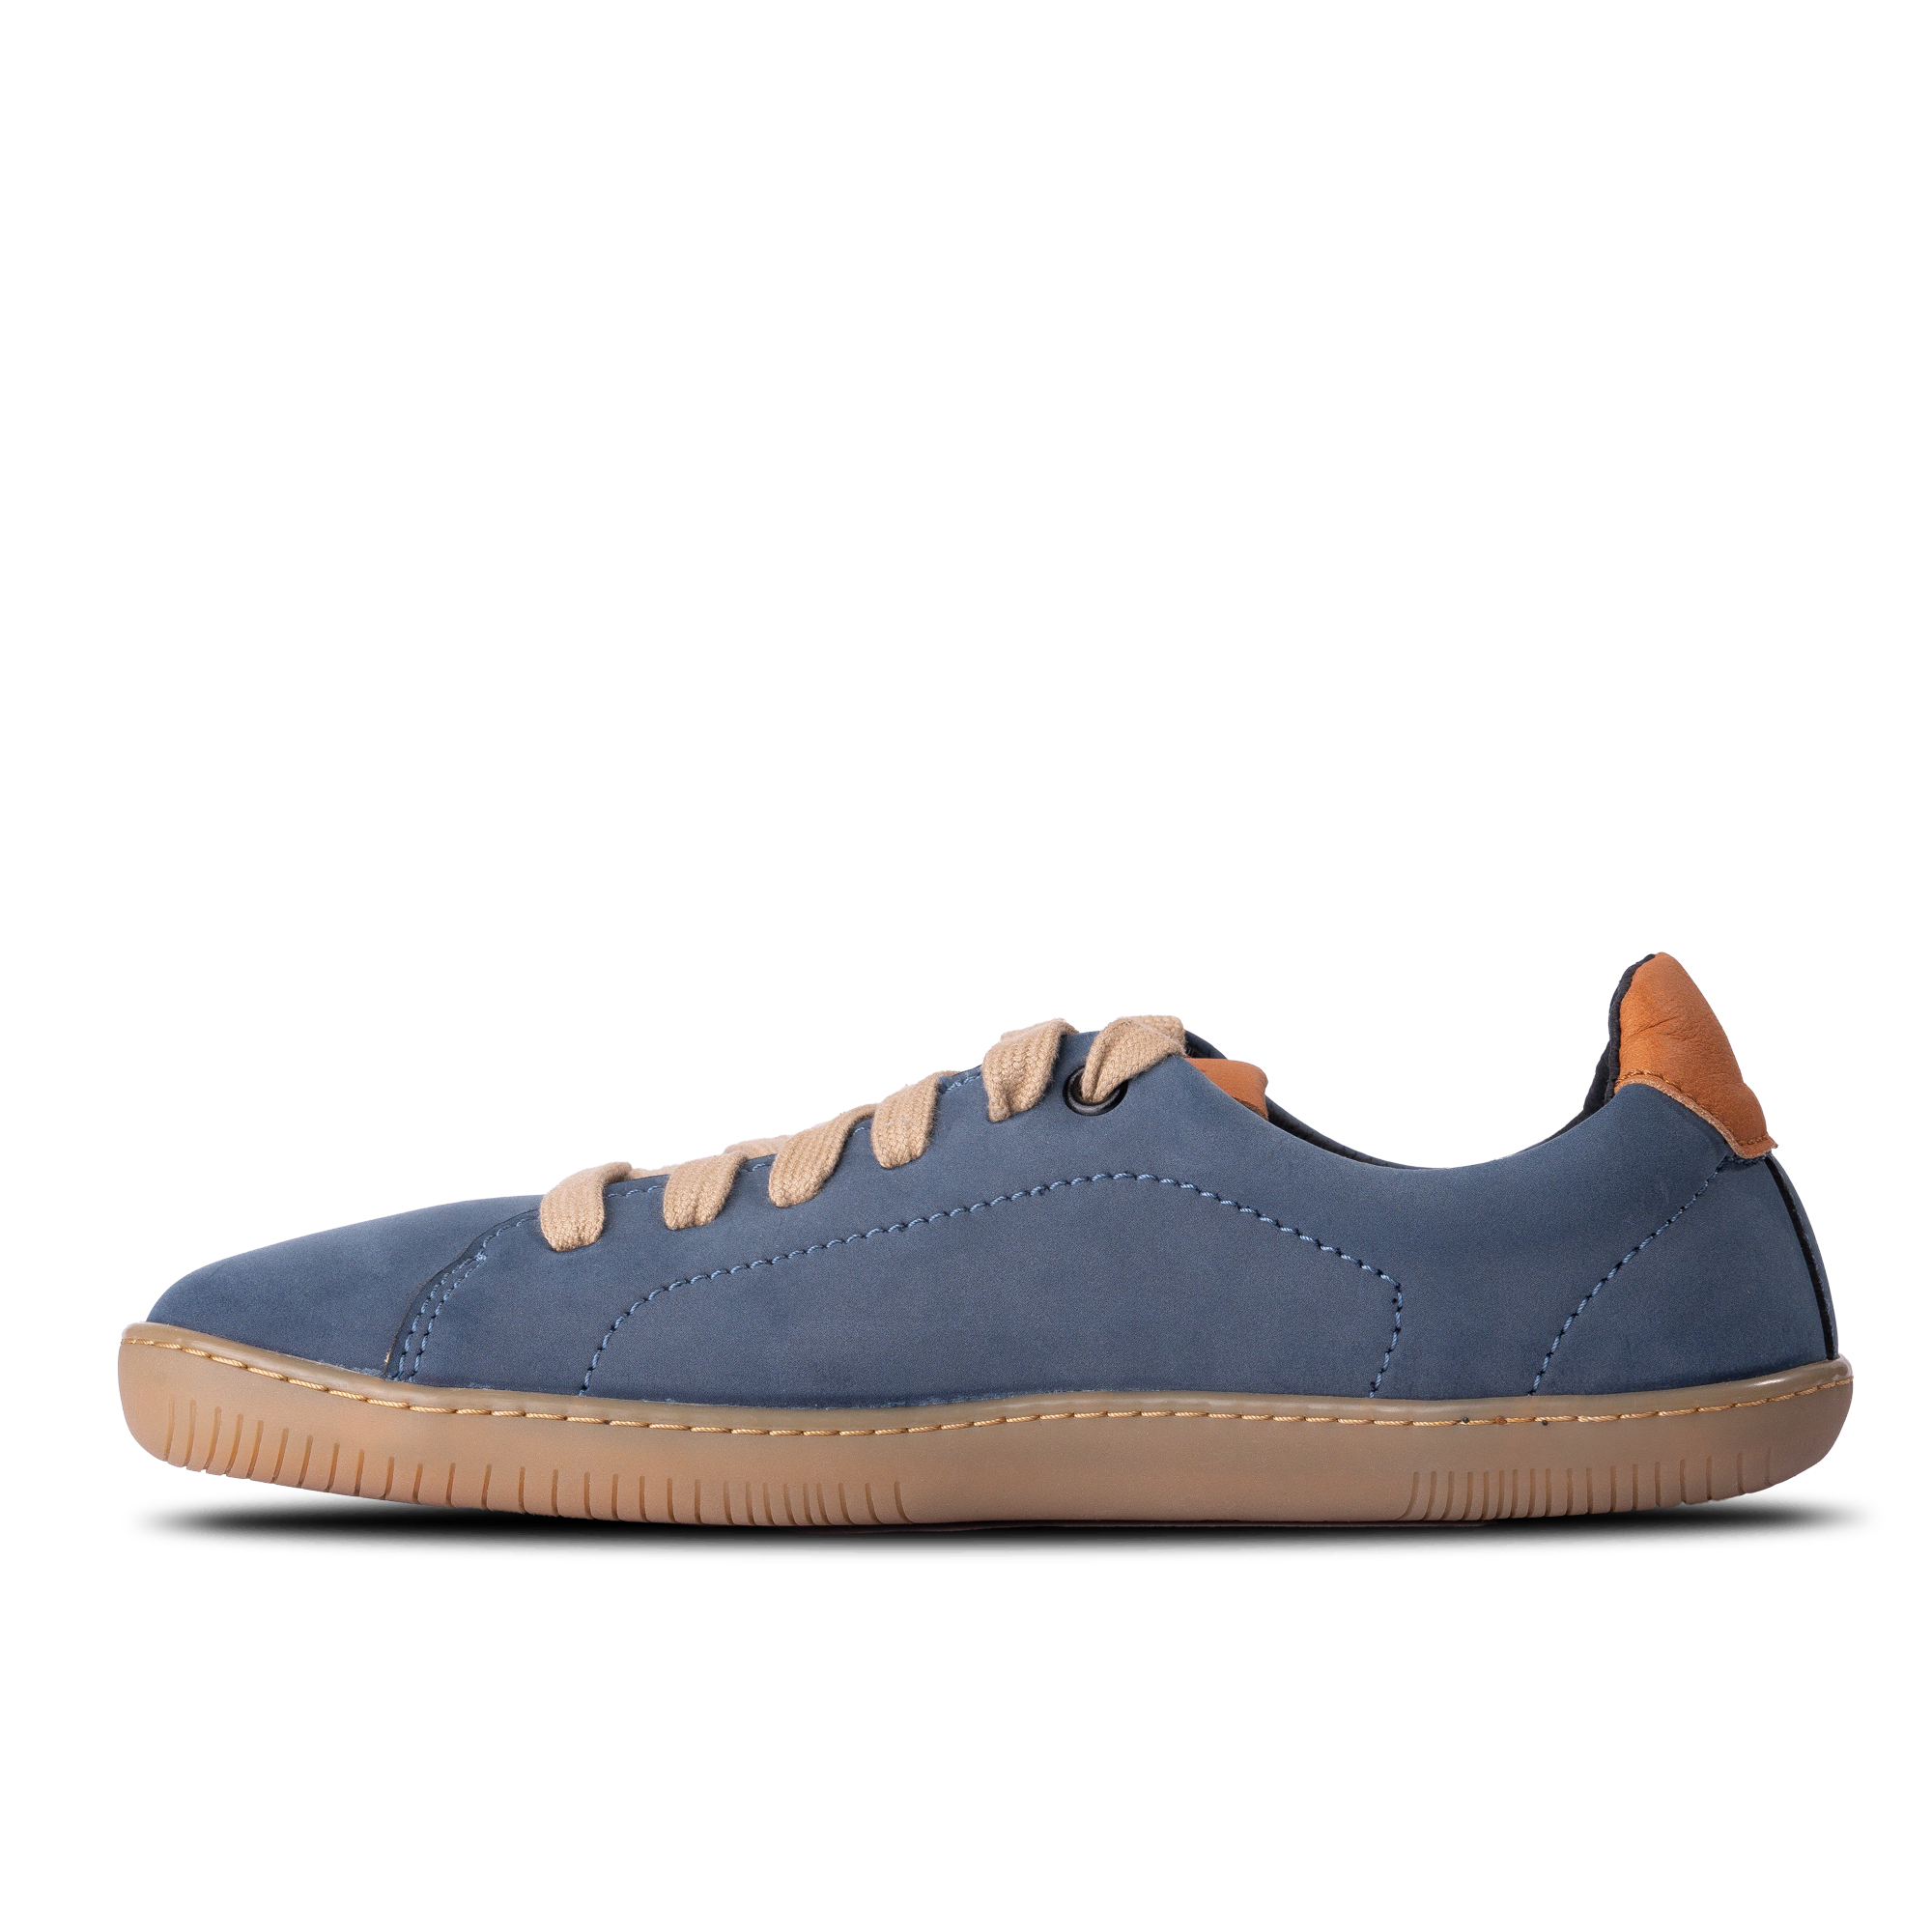 Aylla Keck Womens barfods sneakers i læder til kvinder i farven blue, inderside